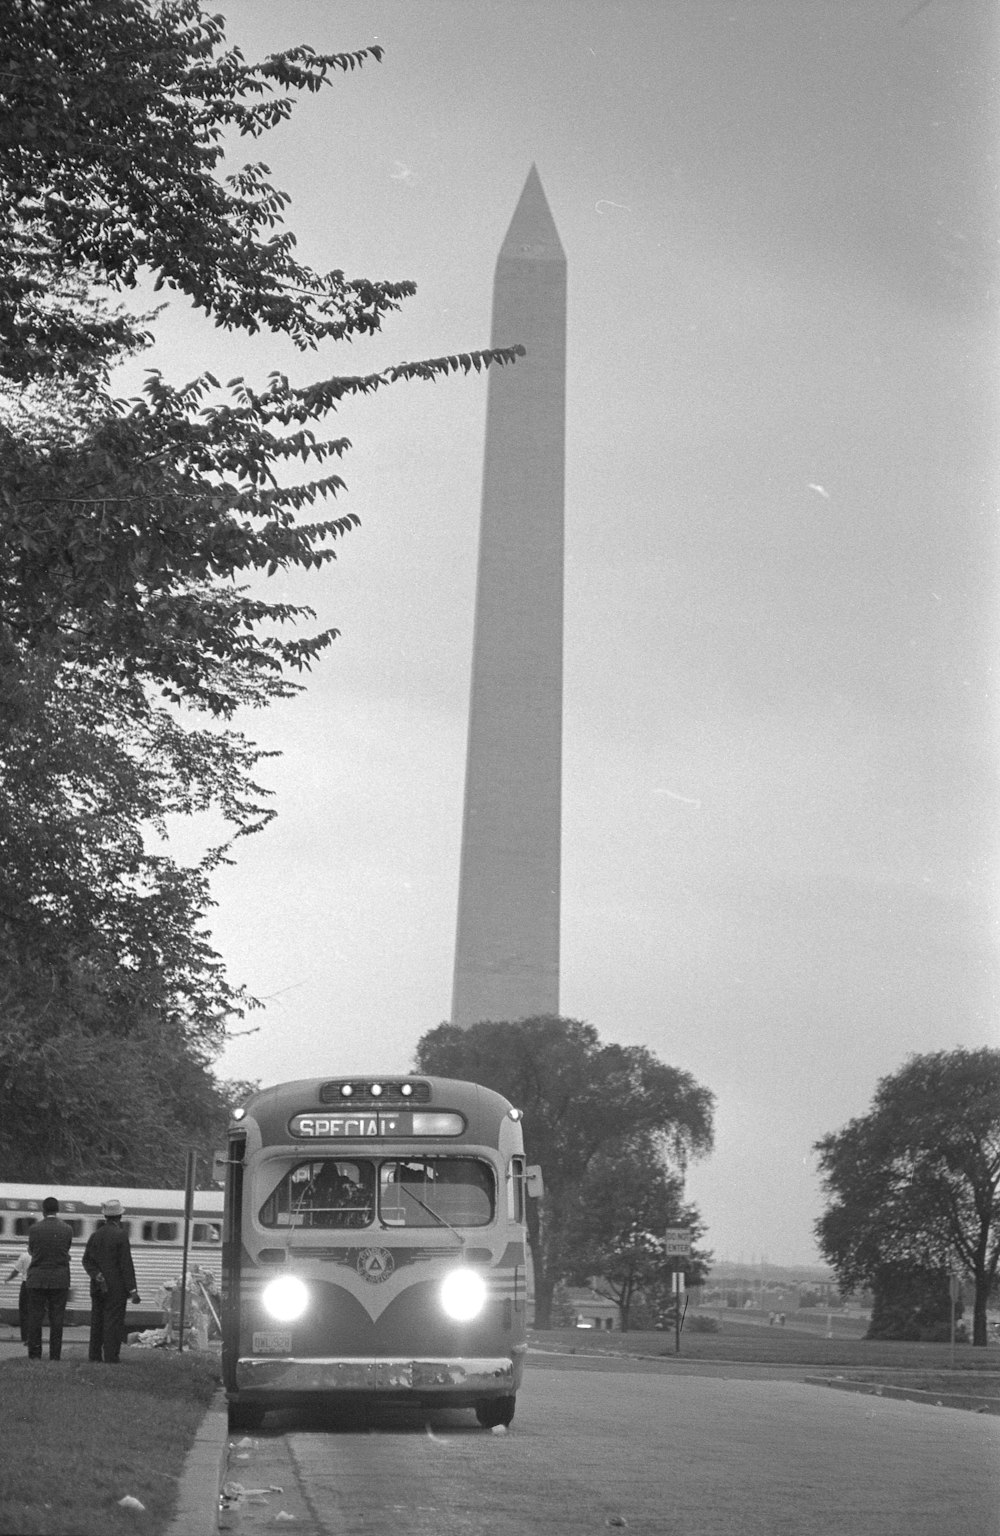 ワシントン大行進の後 ワシントン記念塔の近くを出発するバスの写真 Unsplashで見つけるグレーの無料写真